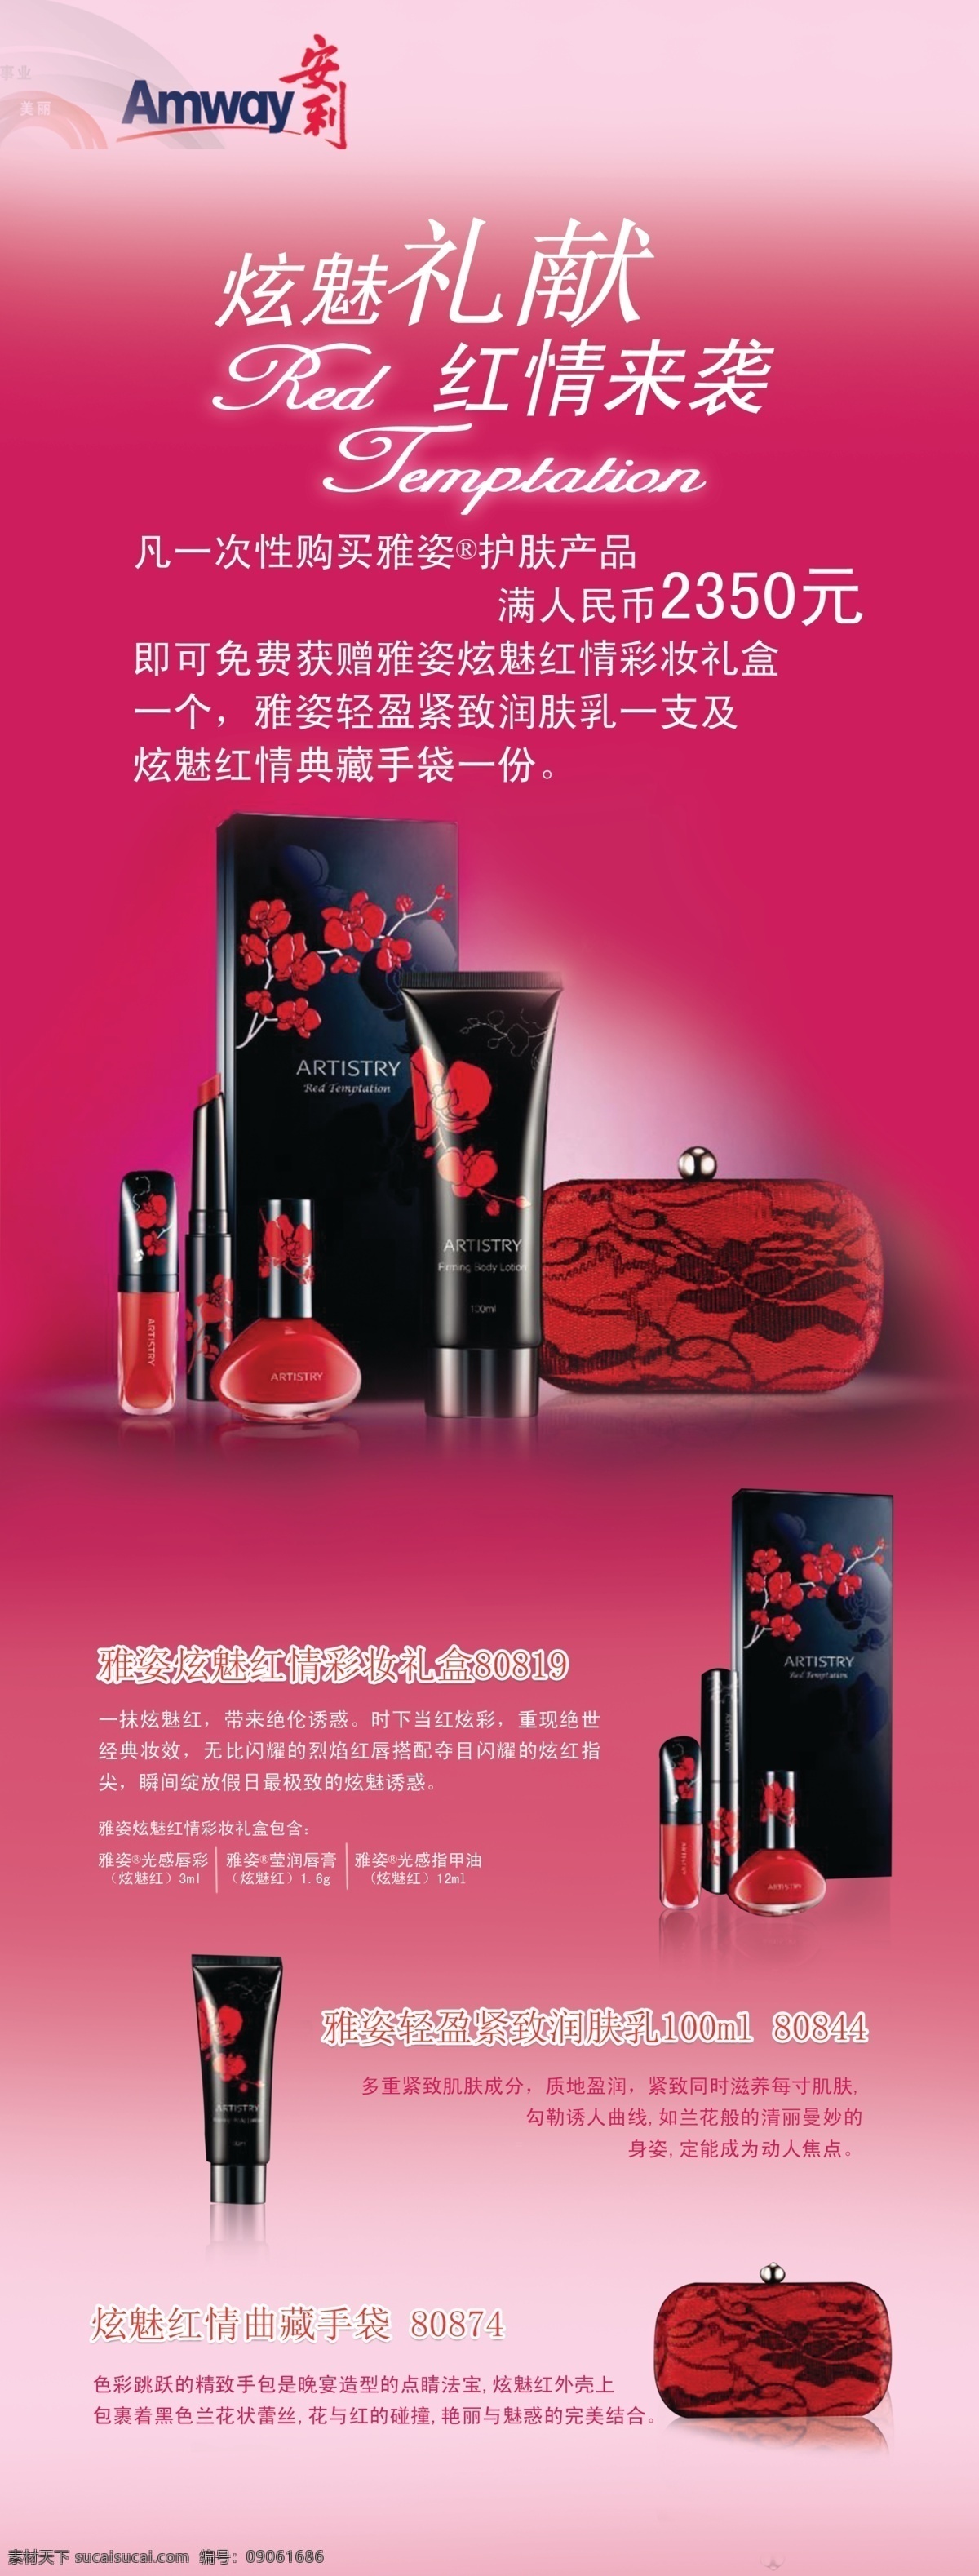 化妆品易拉宝 化妆品 易拉宝 x展架 红色背景 护肤品 展板模板 广告设计模板 源文件